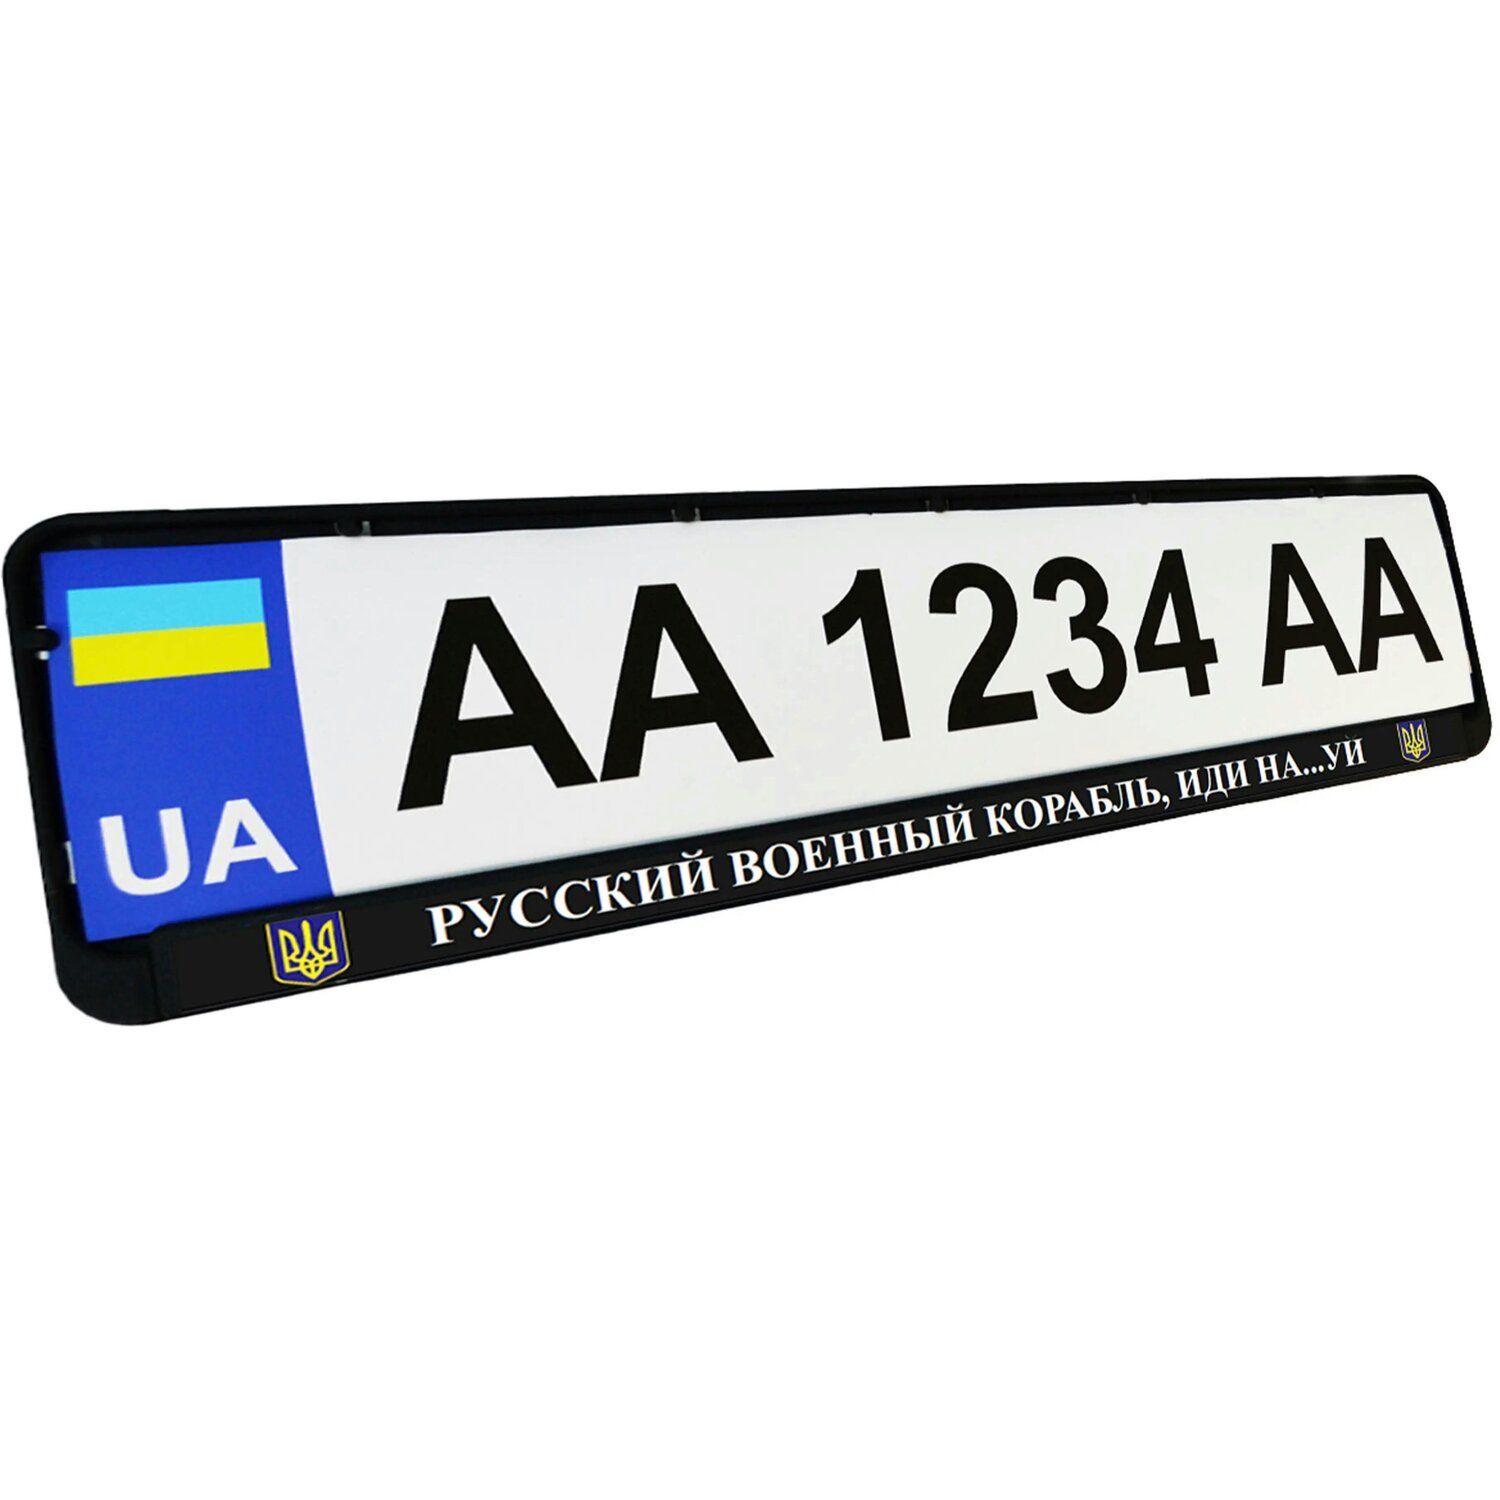 Рамка номерного знака Poputchik пластикова патріотична Російський військовий корабель, йди на…уй (24-266-IS)фото